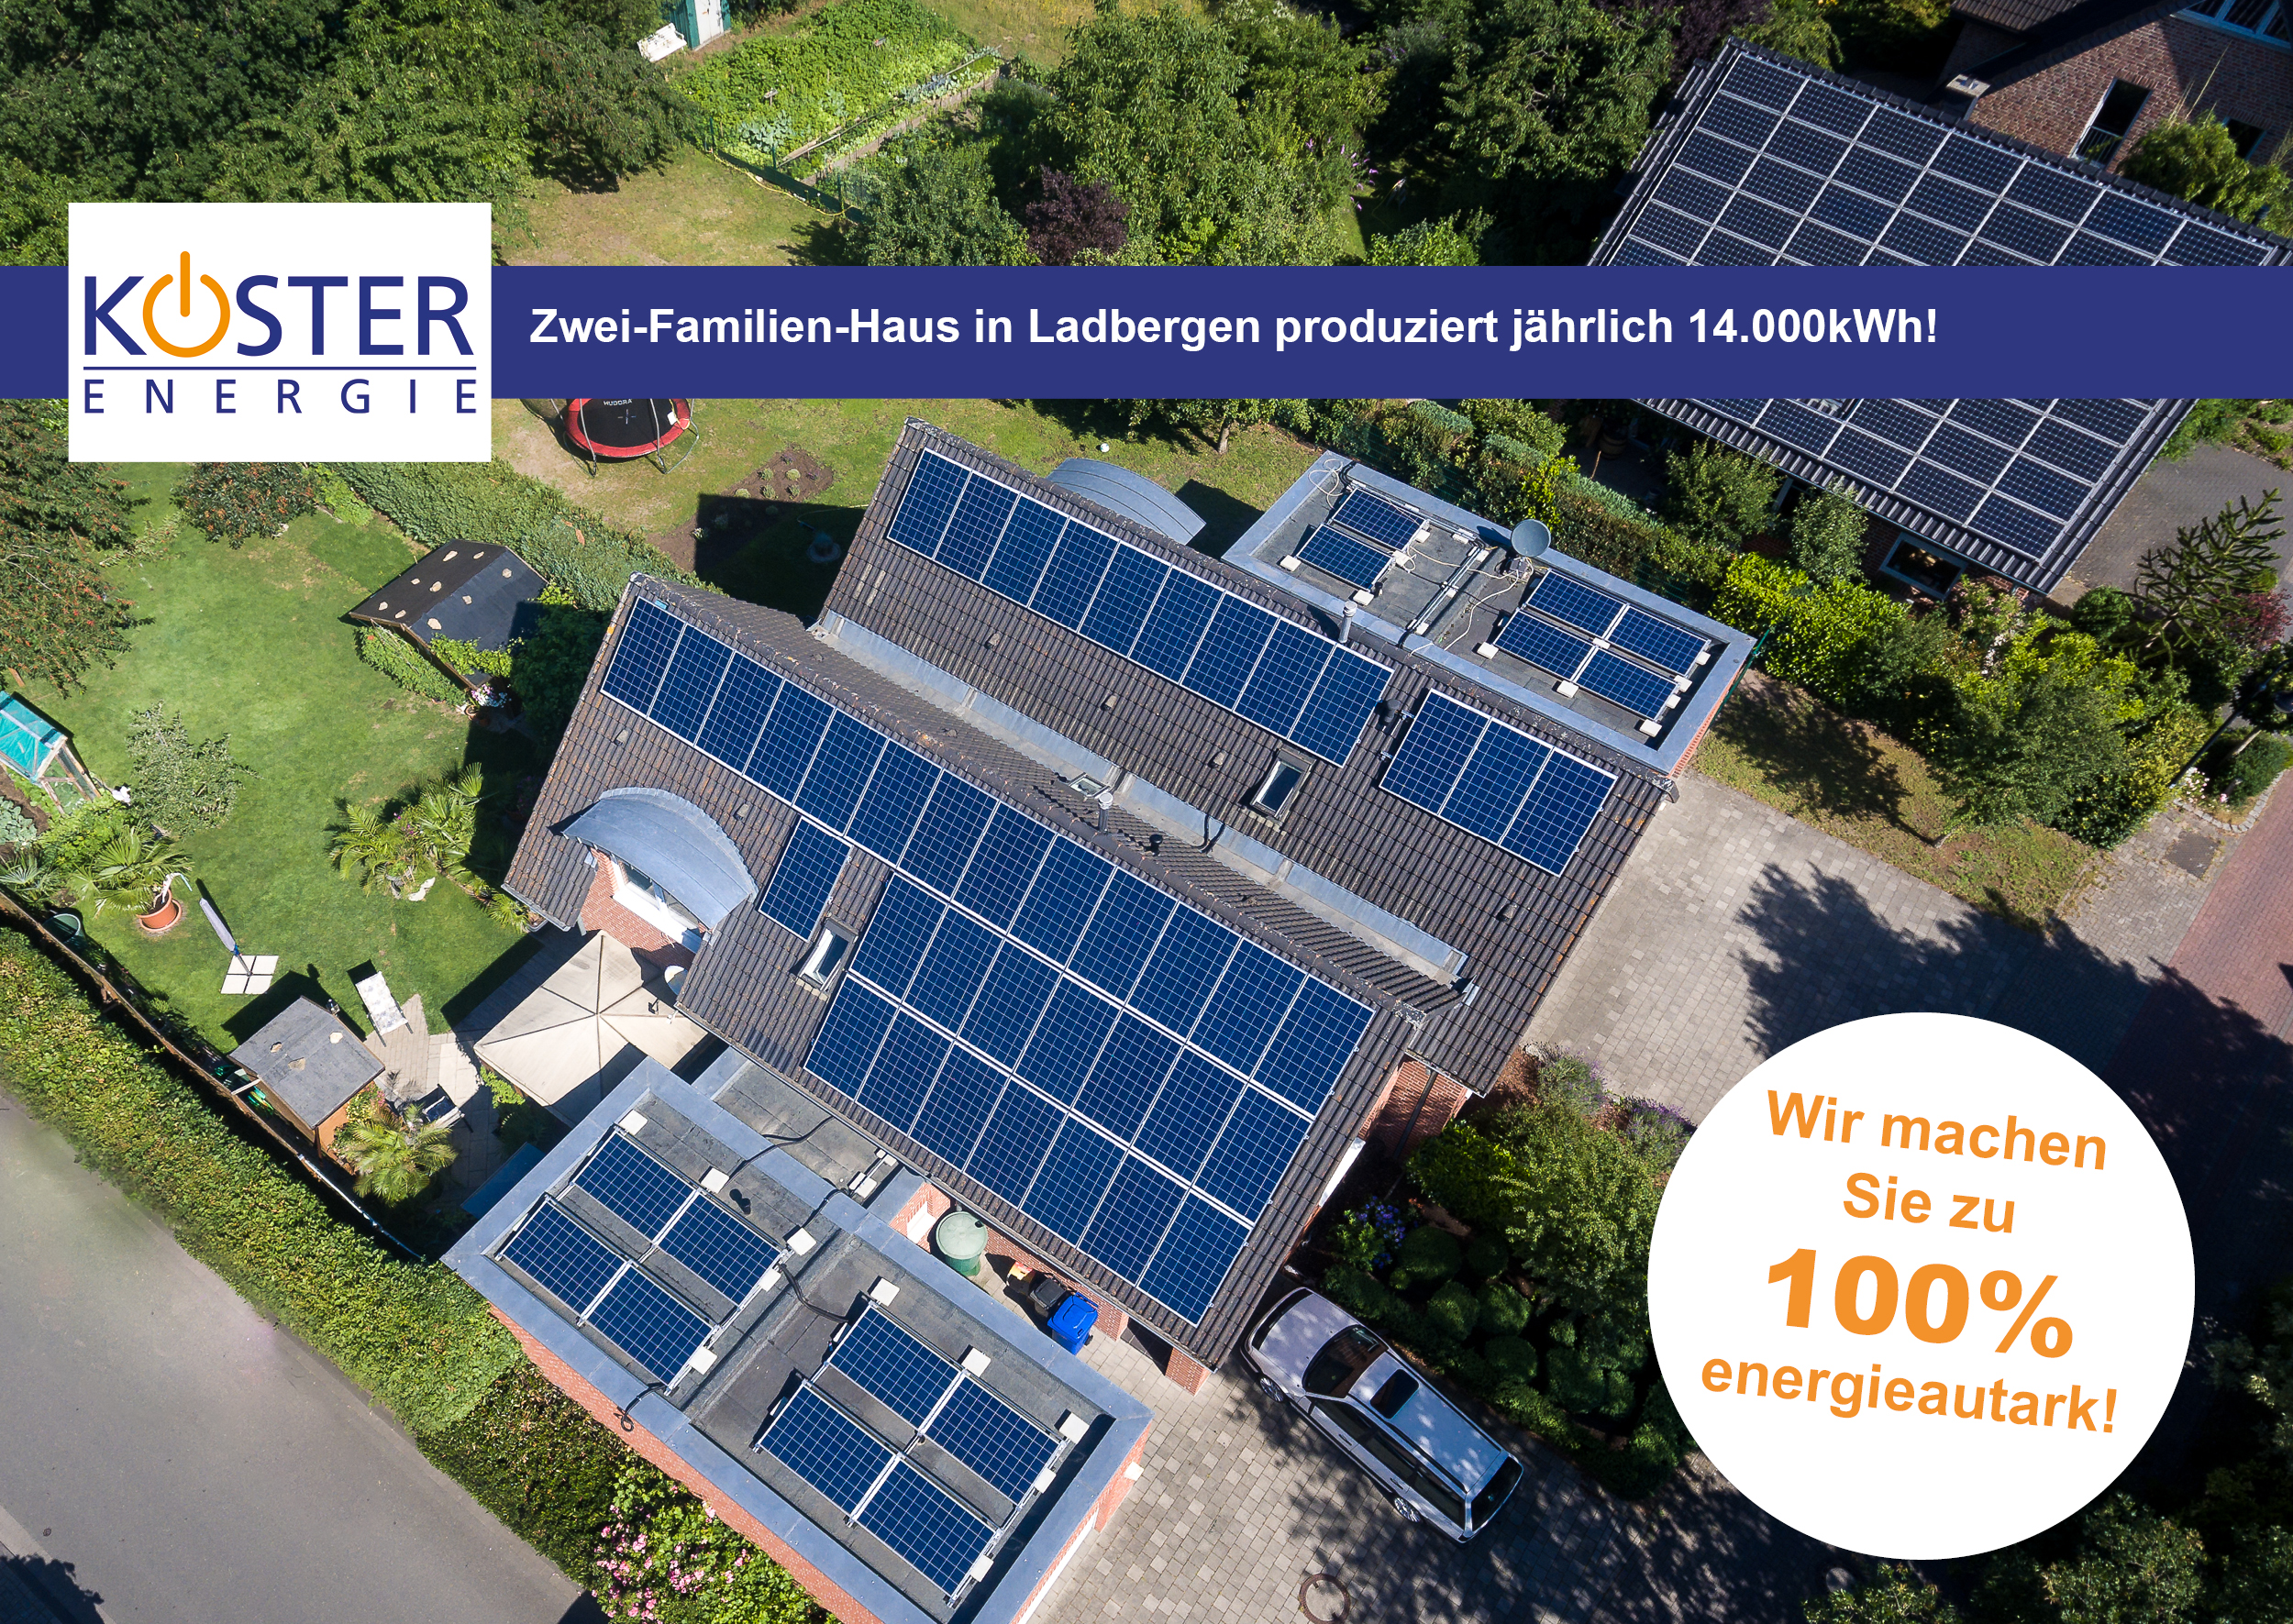 Zwei-Familienhaus produziert jährlich 14.000 kWh grünen Strom!